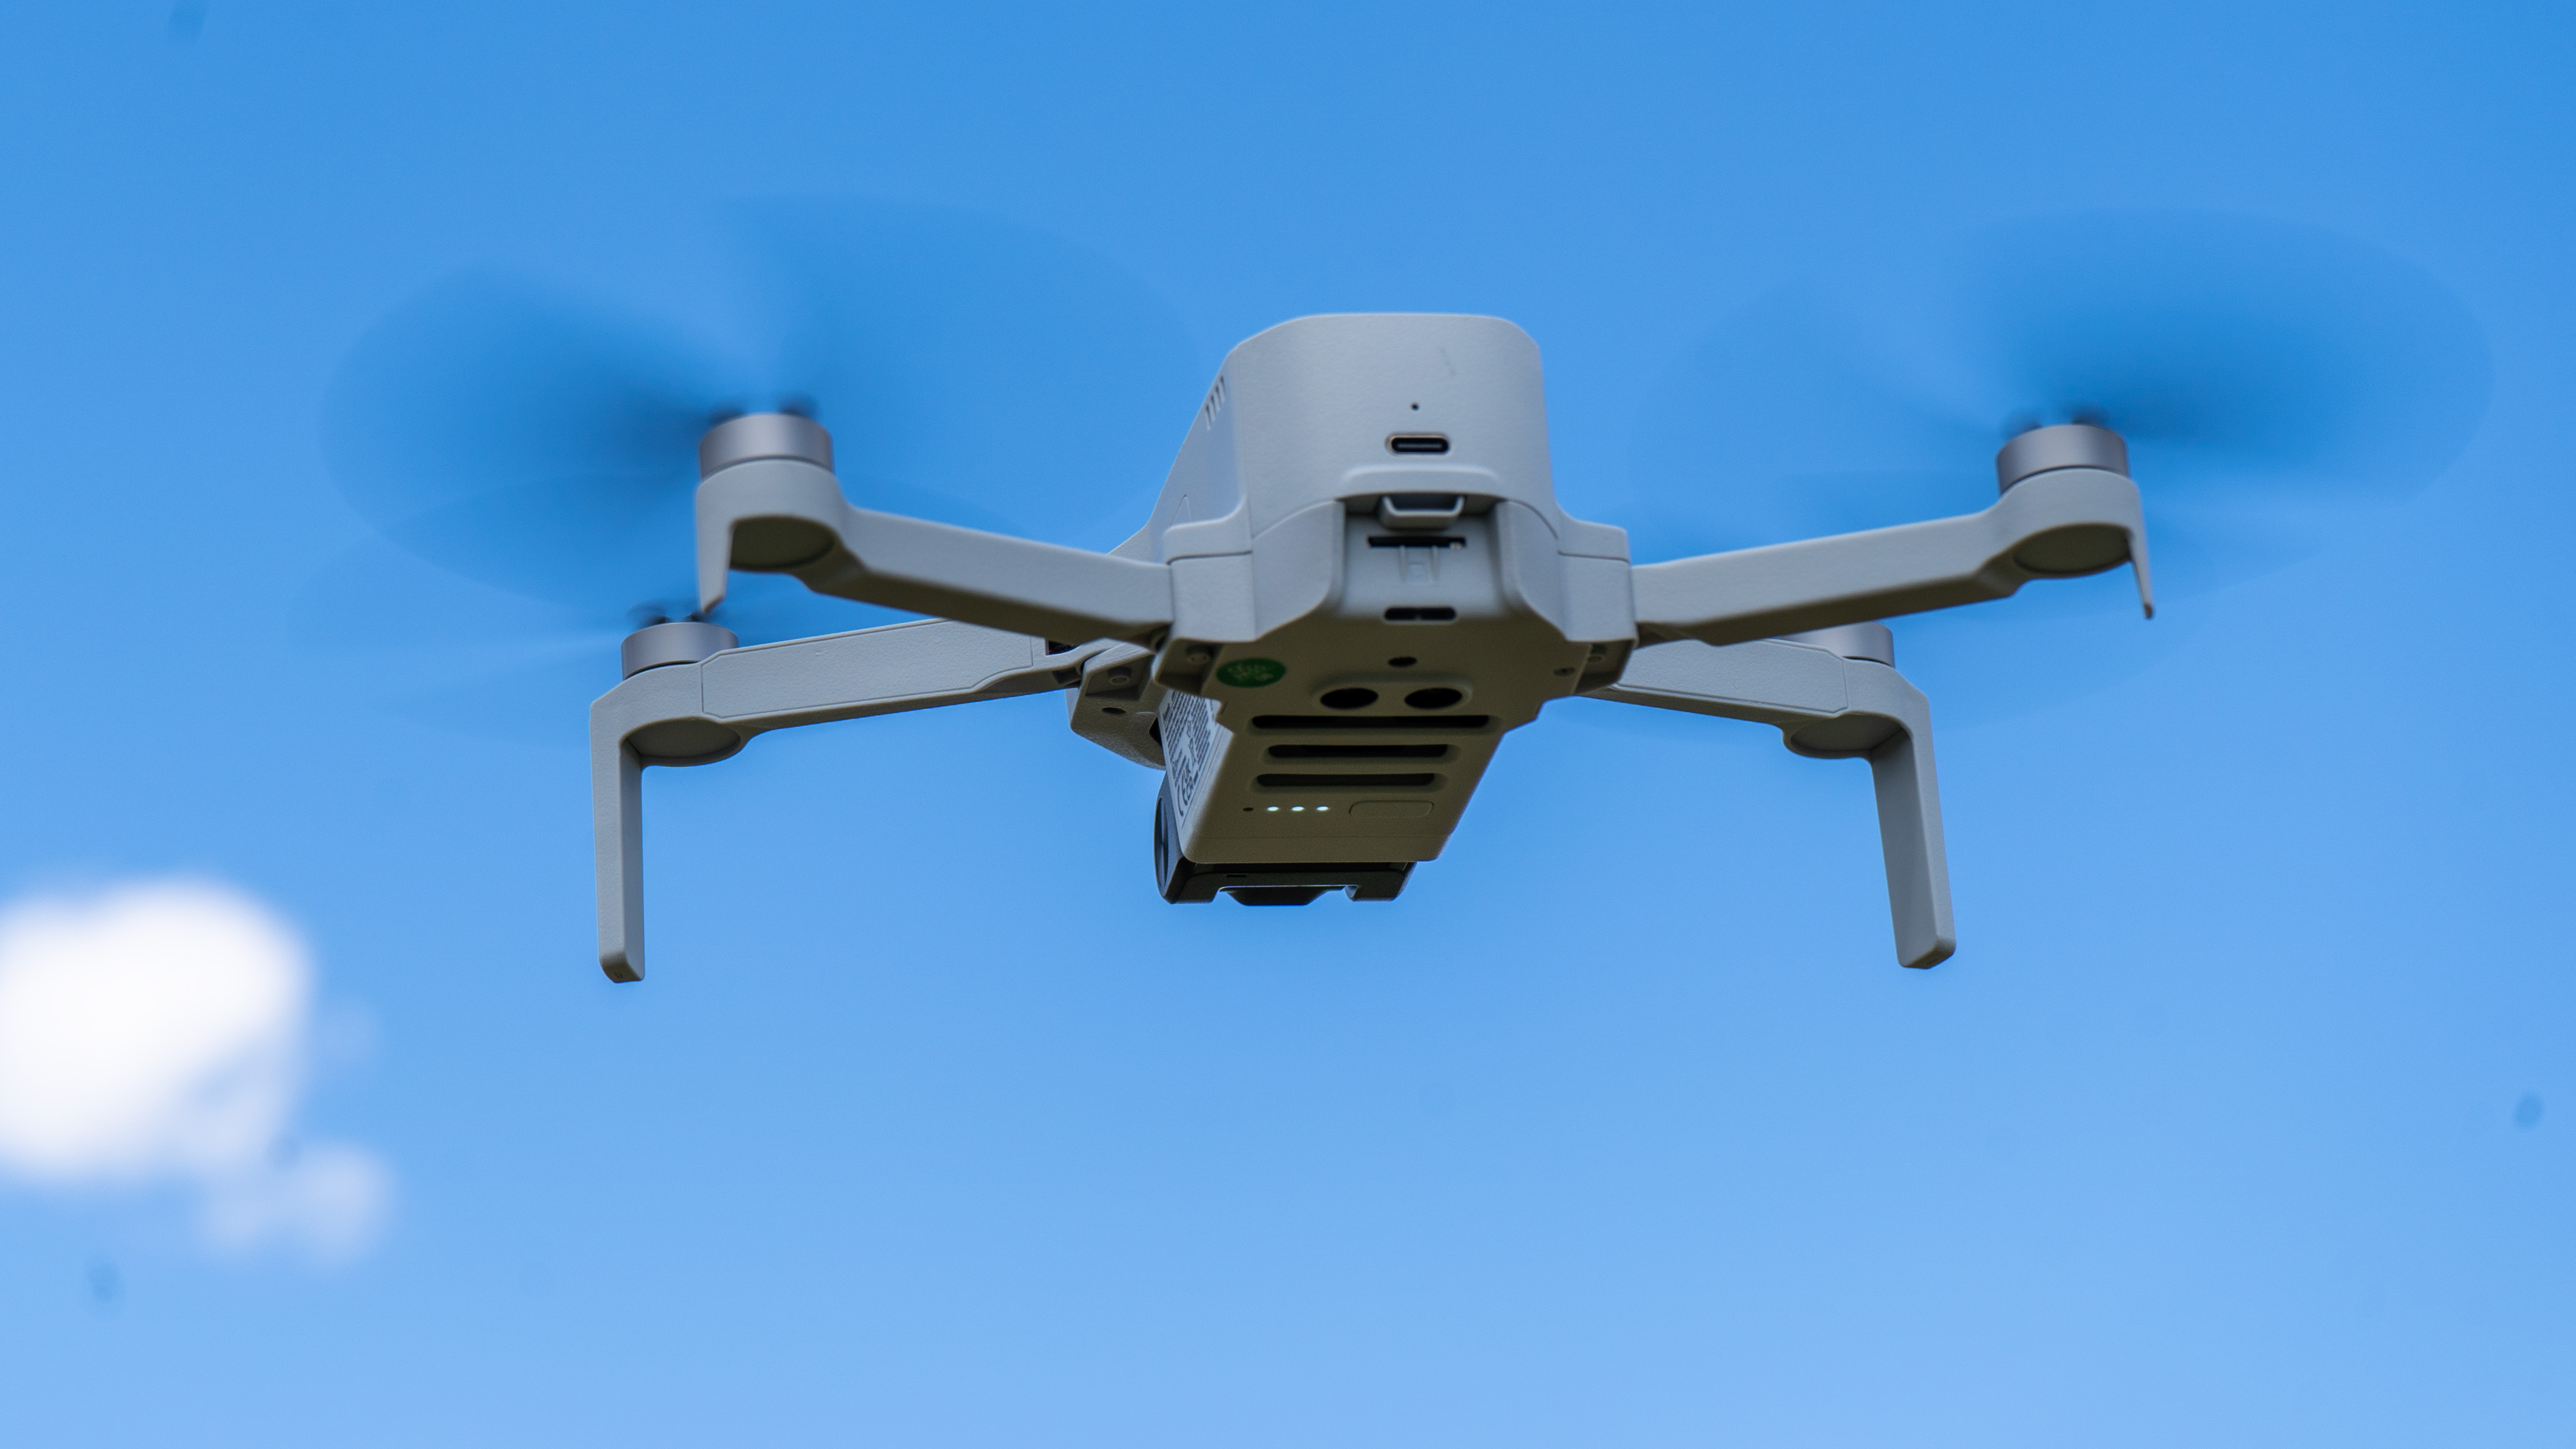 Potensic Atom SE Mini Drone (4K Video Test) From  